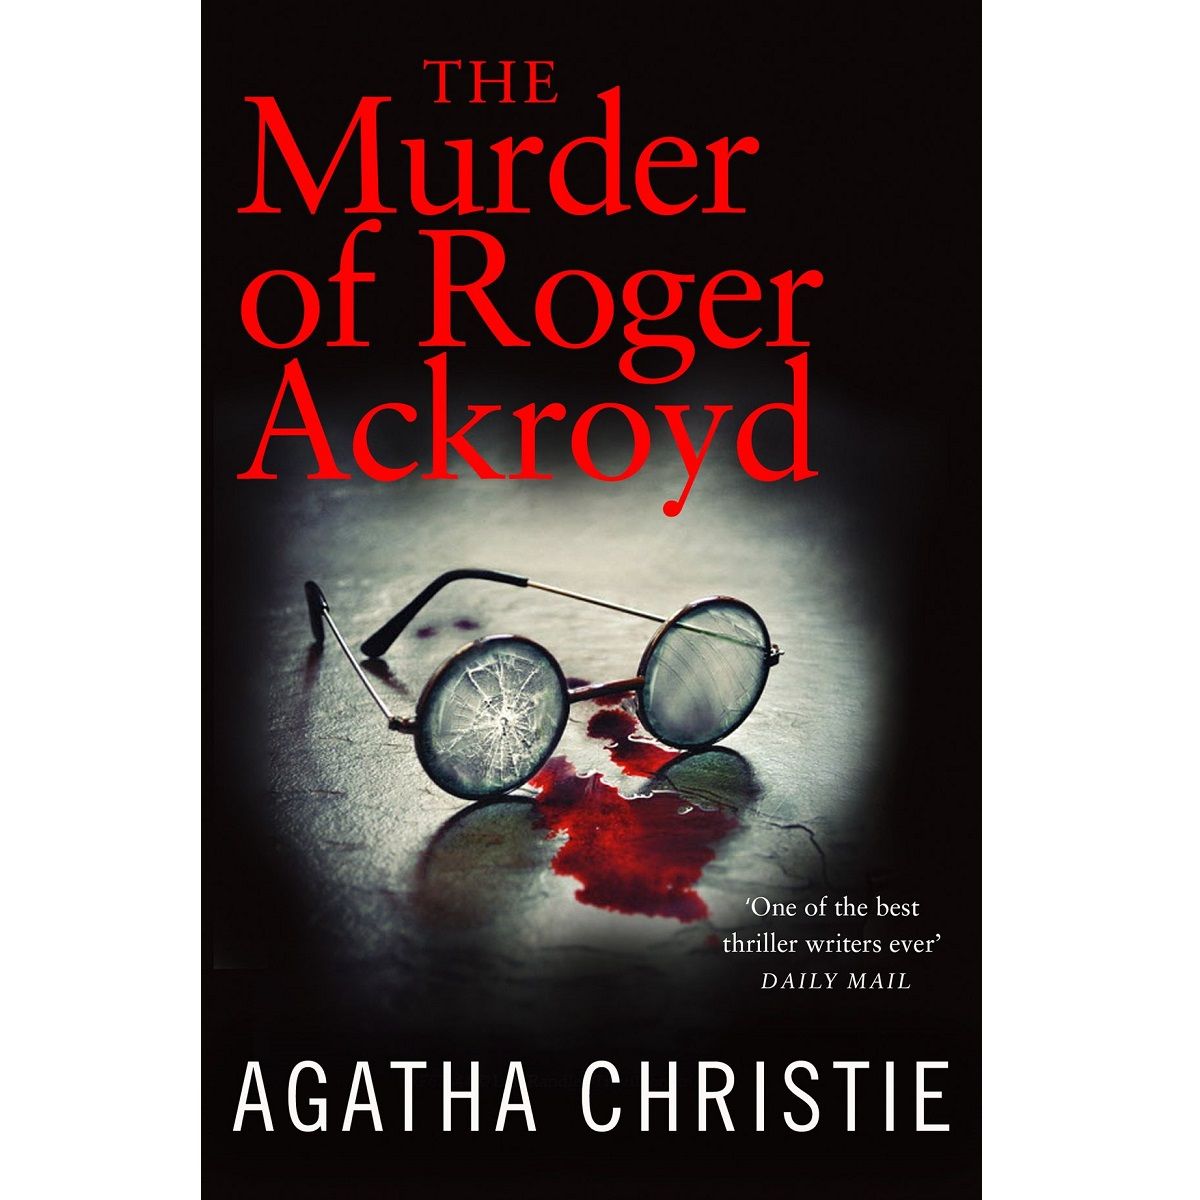 The Murder of Roger Ackoyd